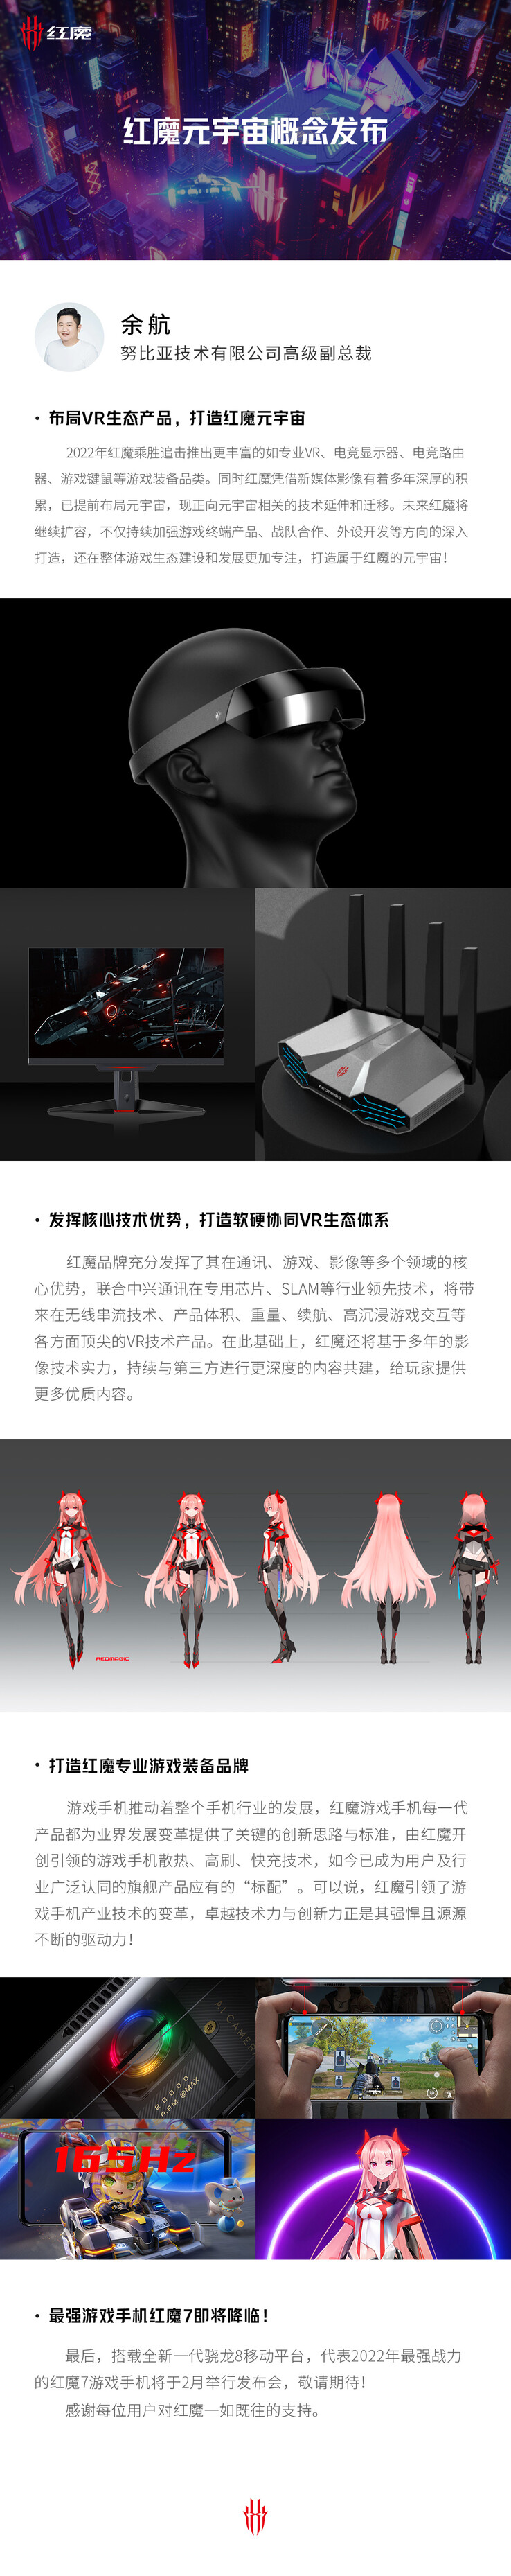 RedMagic deja caer varias pistas sobre nuevos productos en el mismo póster. (Fuente: RedMagic vía Weibo)